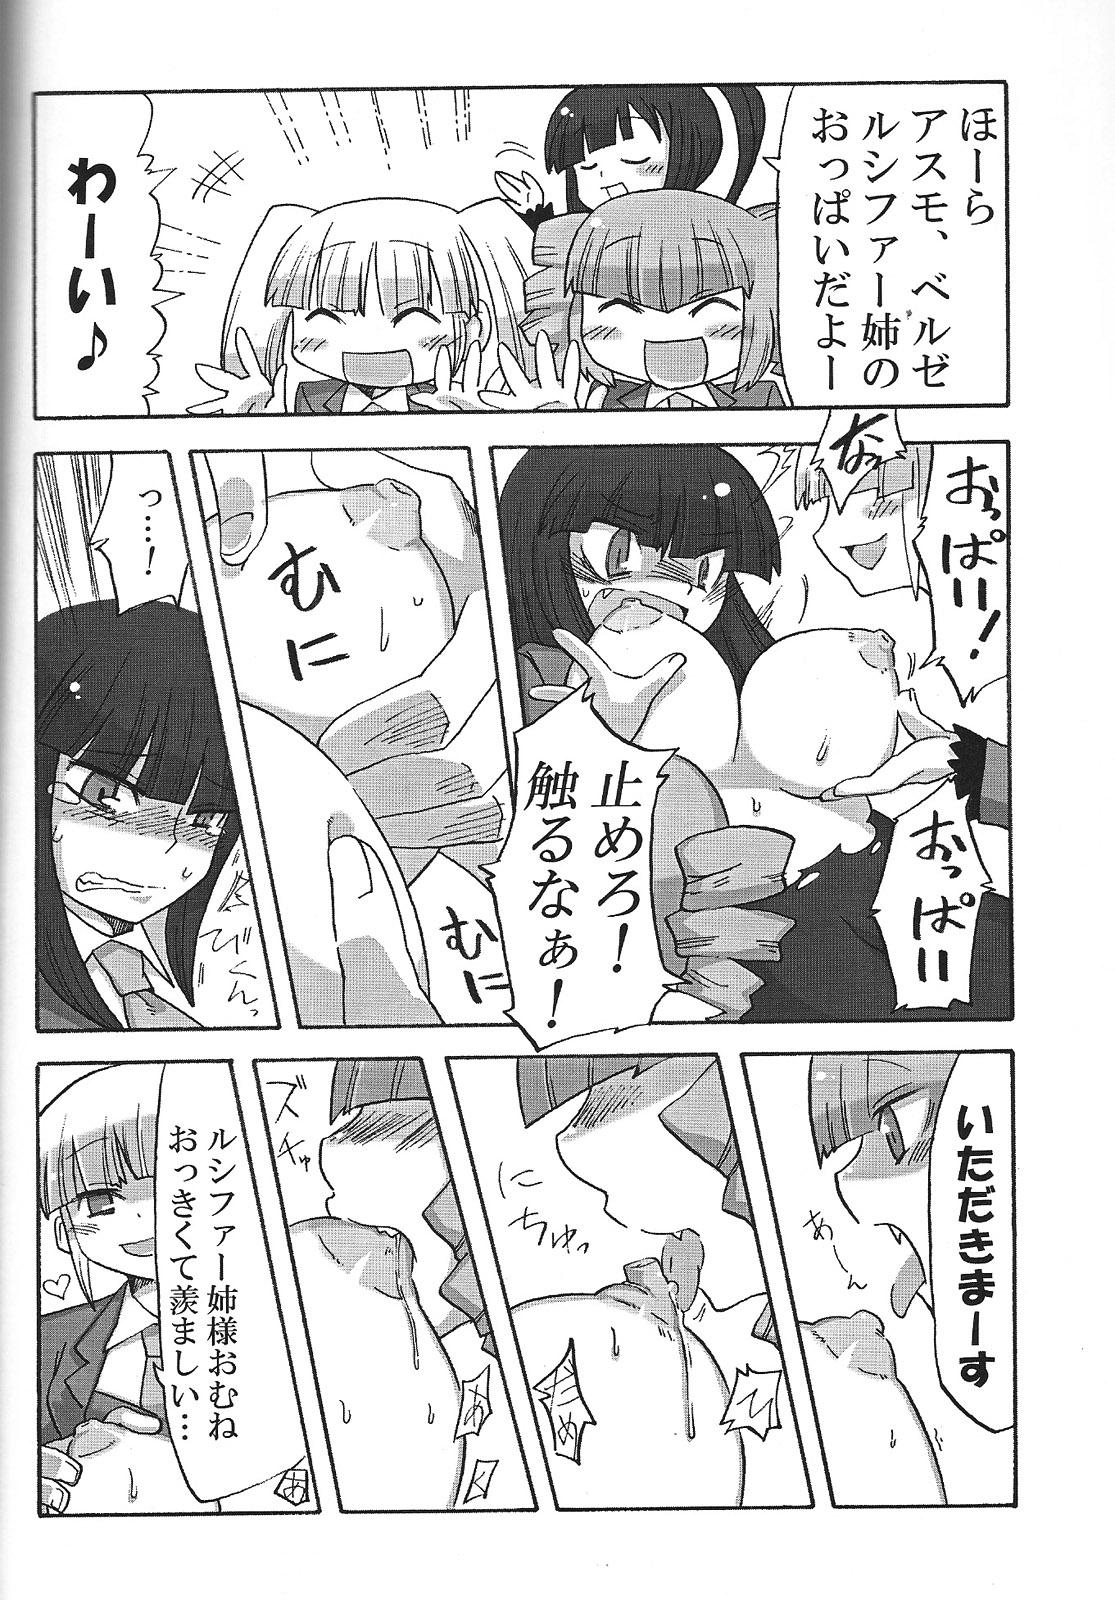 Red Head Nakayoshi 7 Shimai - Umineko no naku koro ni Pale - Page 9